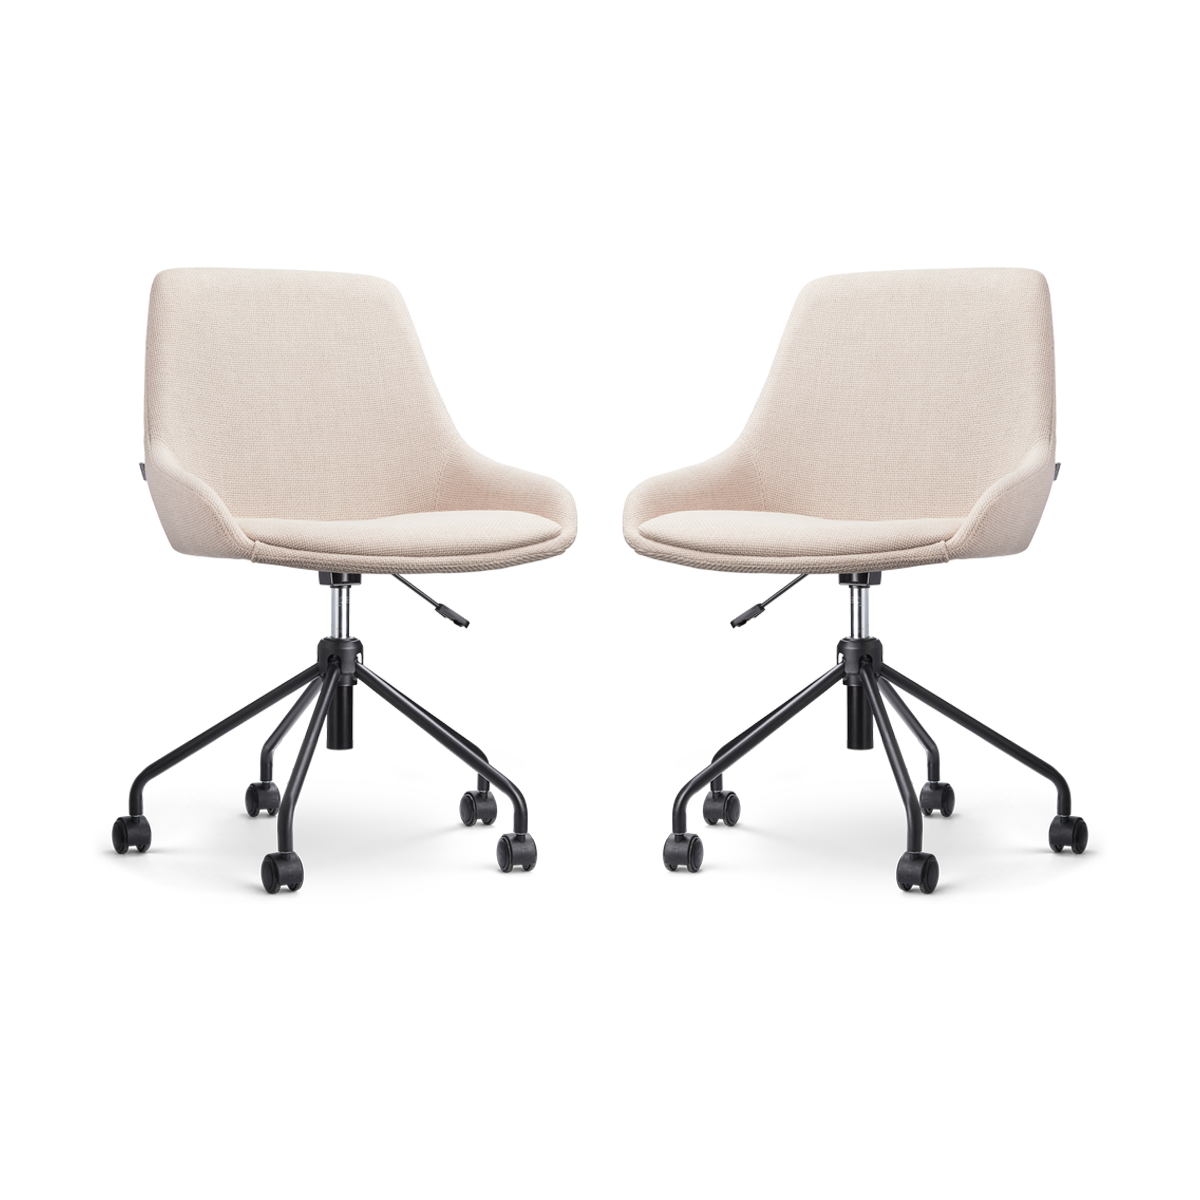 Nout-Isa bureaustoel beige - zwart onderstel - set van 2